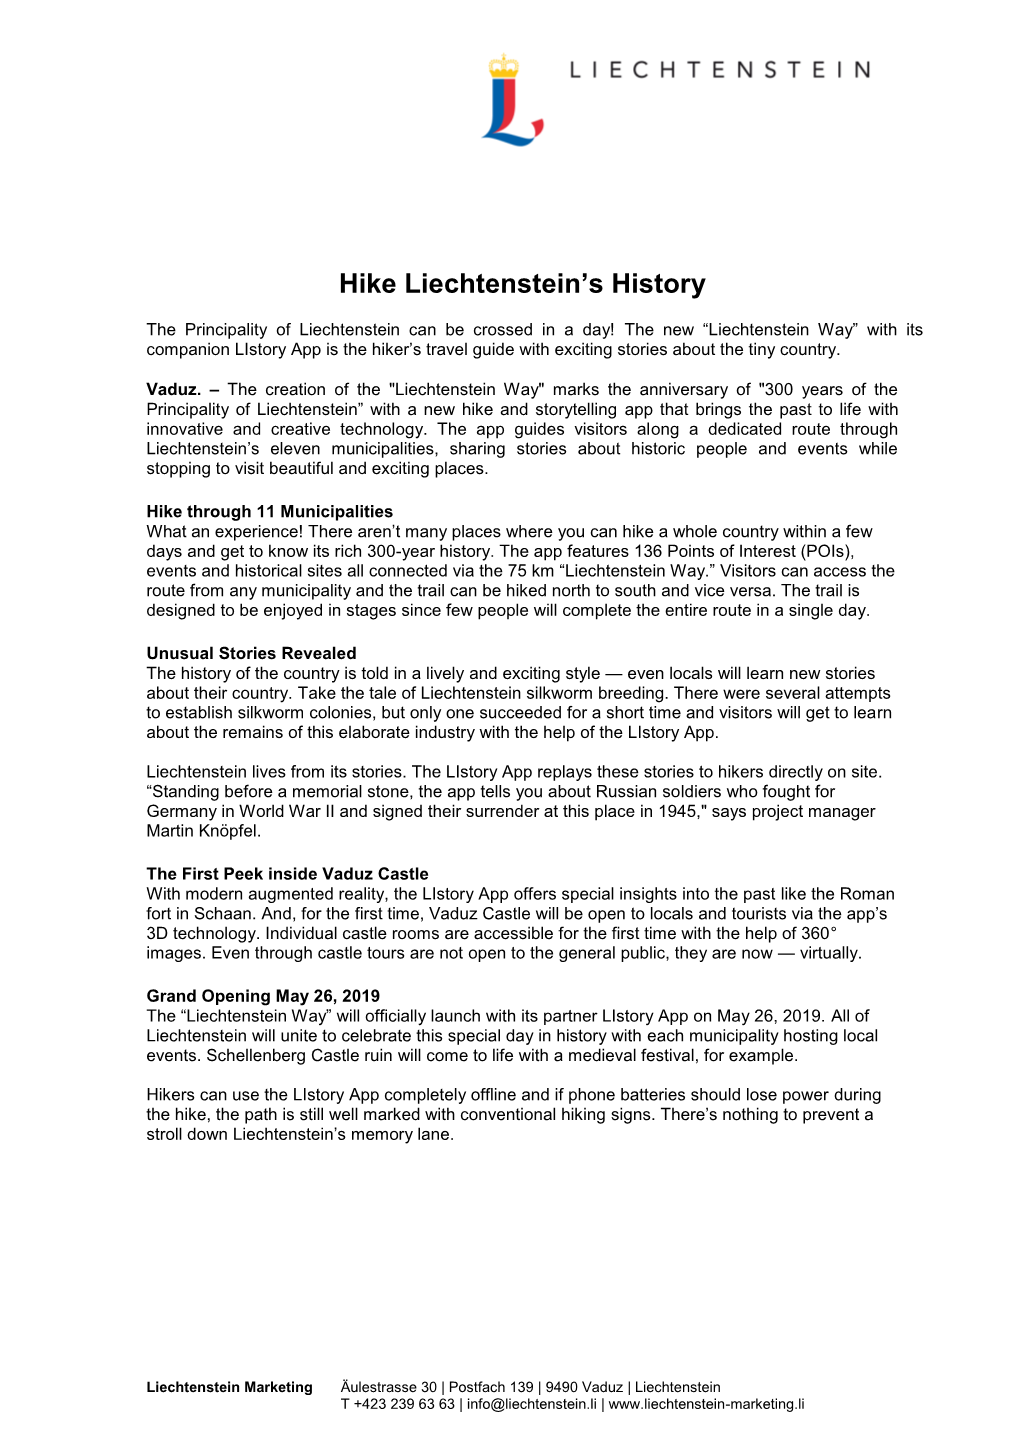 EN Press Release Hike Liechtenstein's History